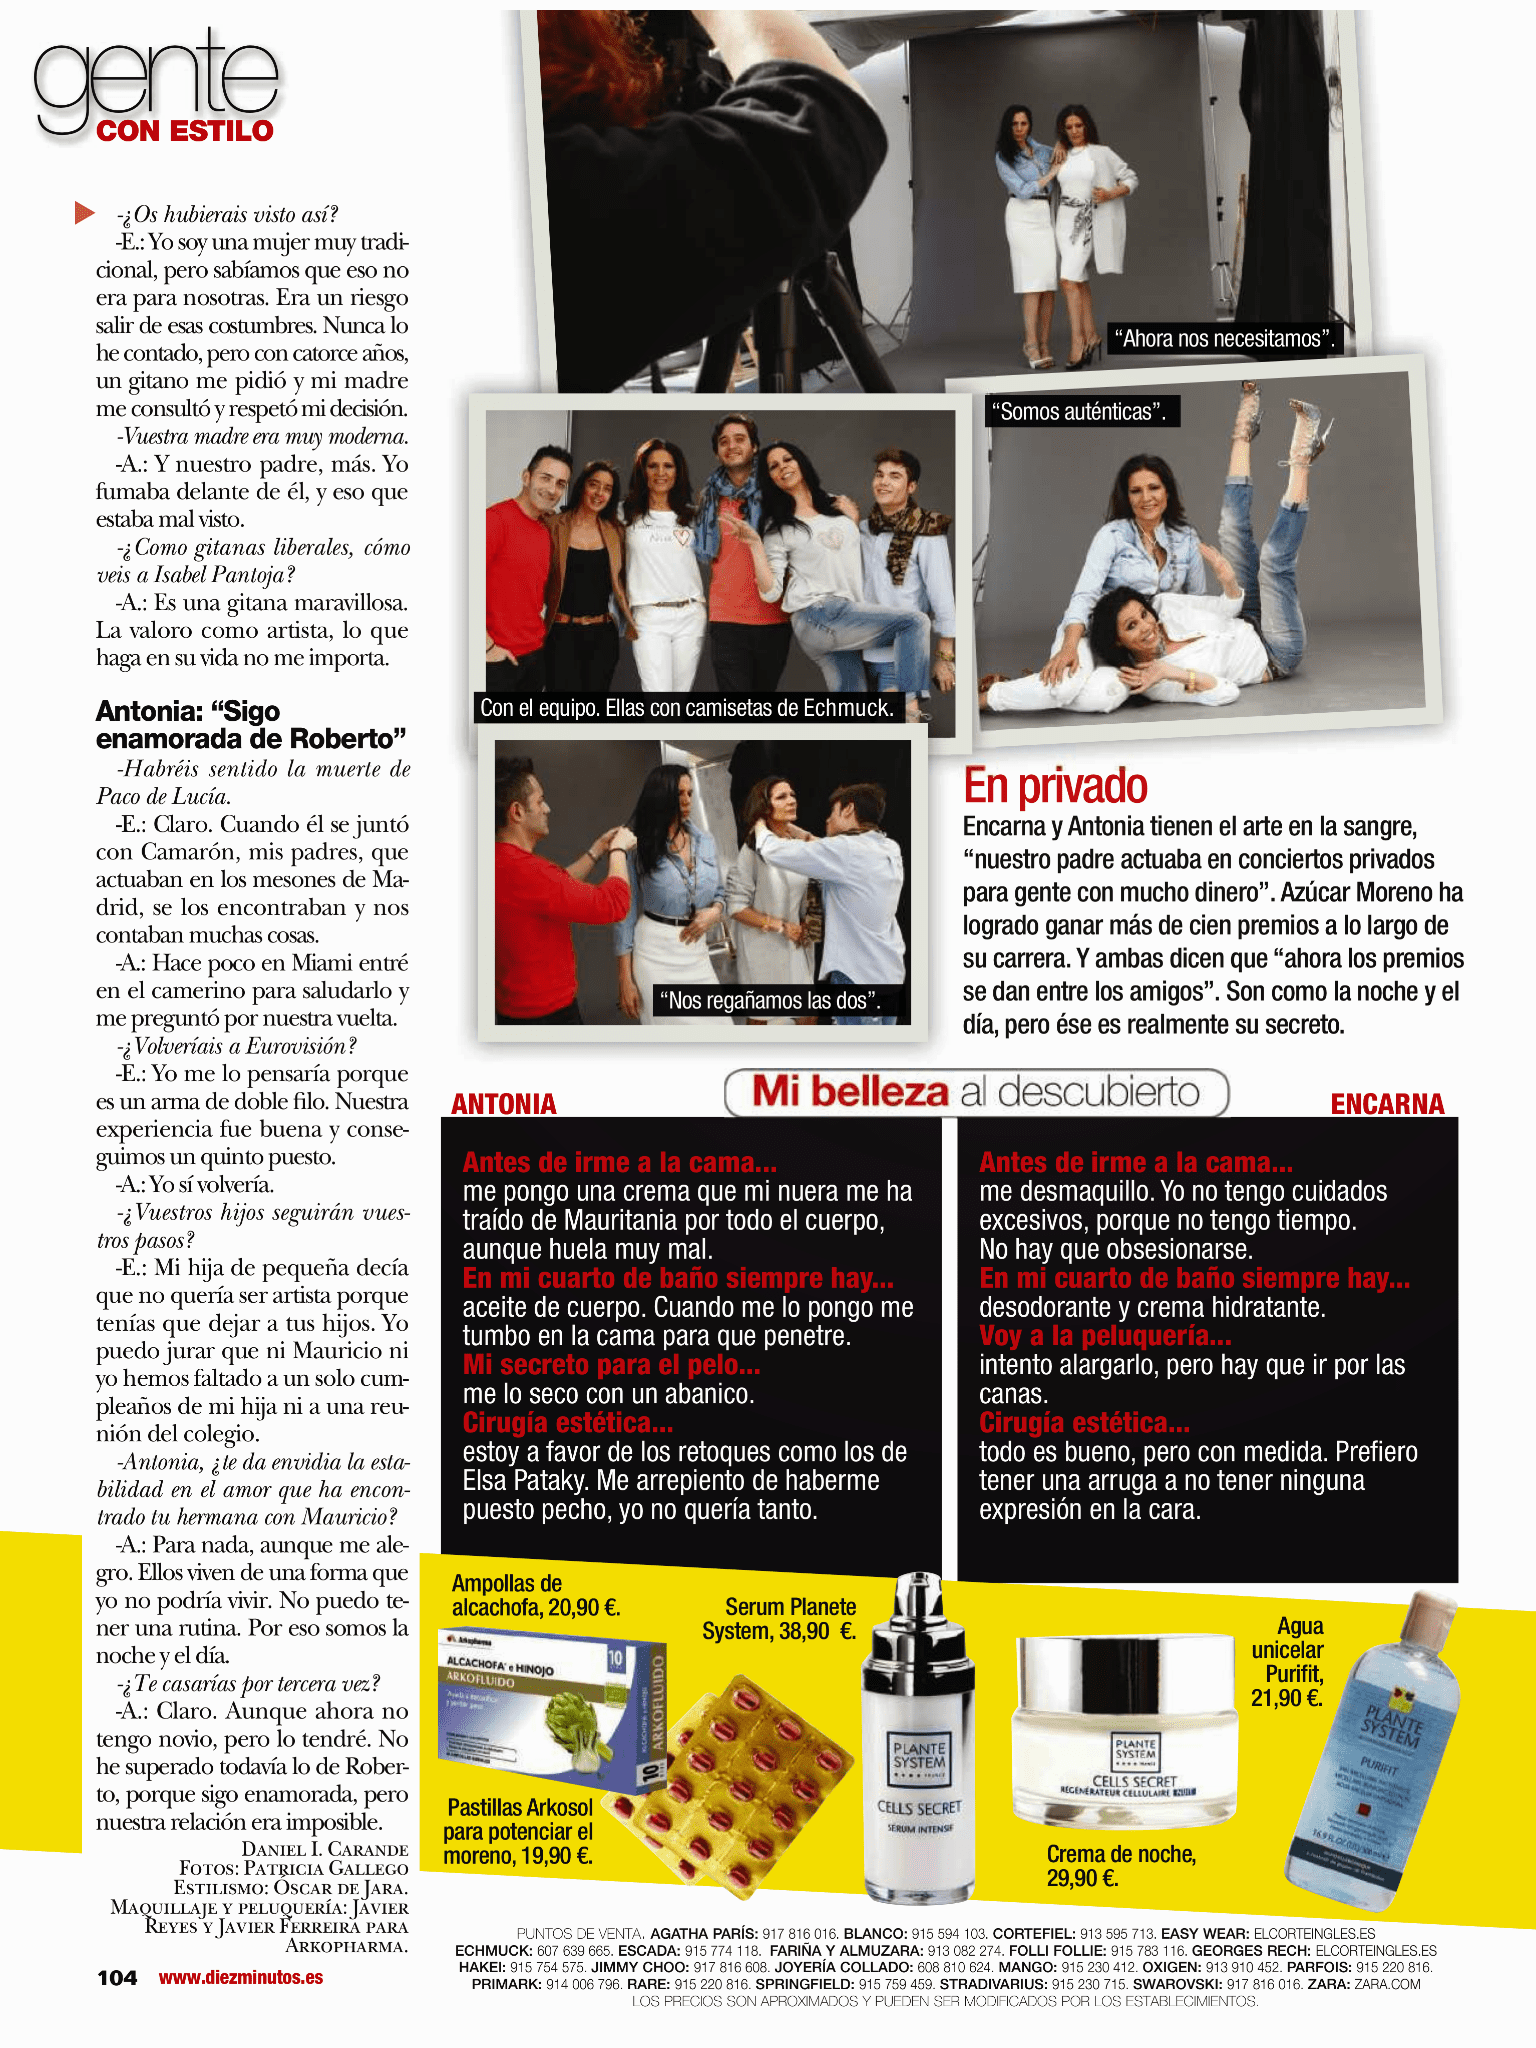 Revista Diez Minutos- Azúcar Moreno